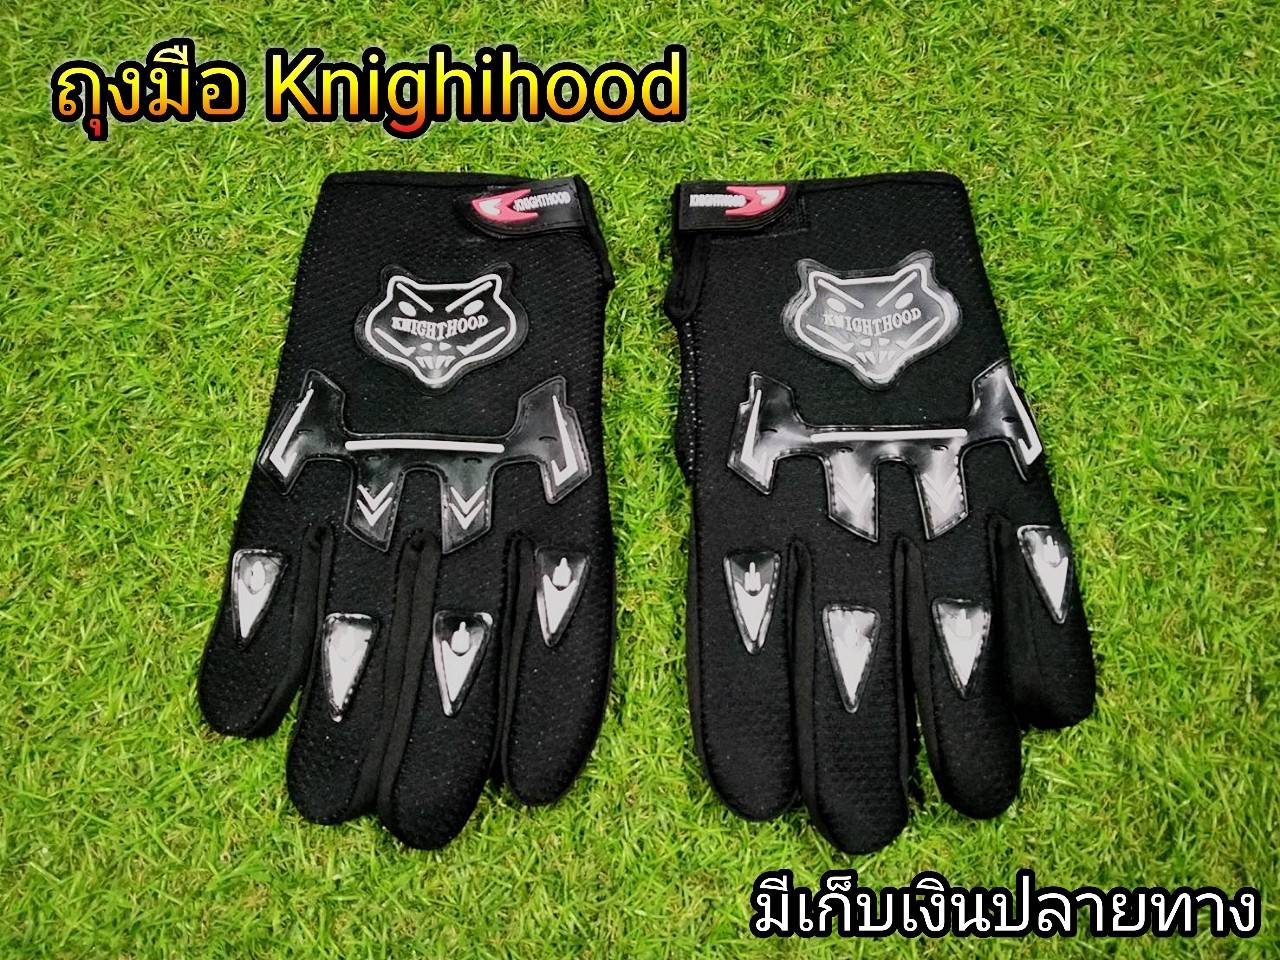 ลดราคาพิเศษ ถุงมือKnighihood สีดำ ถุงมือขับมอเตอไซต์ Knighihood  ใยผ้าคุณภาพ ระบายอากาศได้ดี